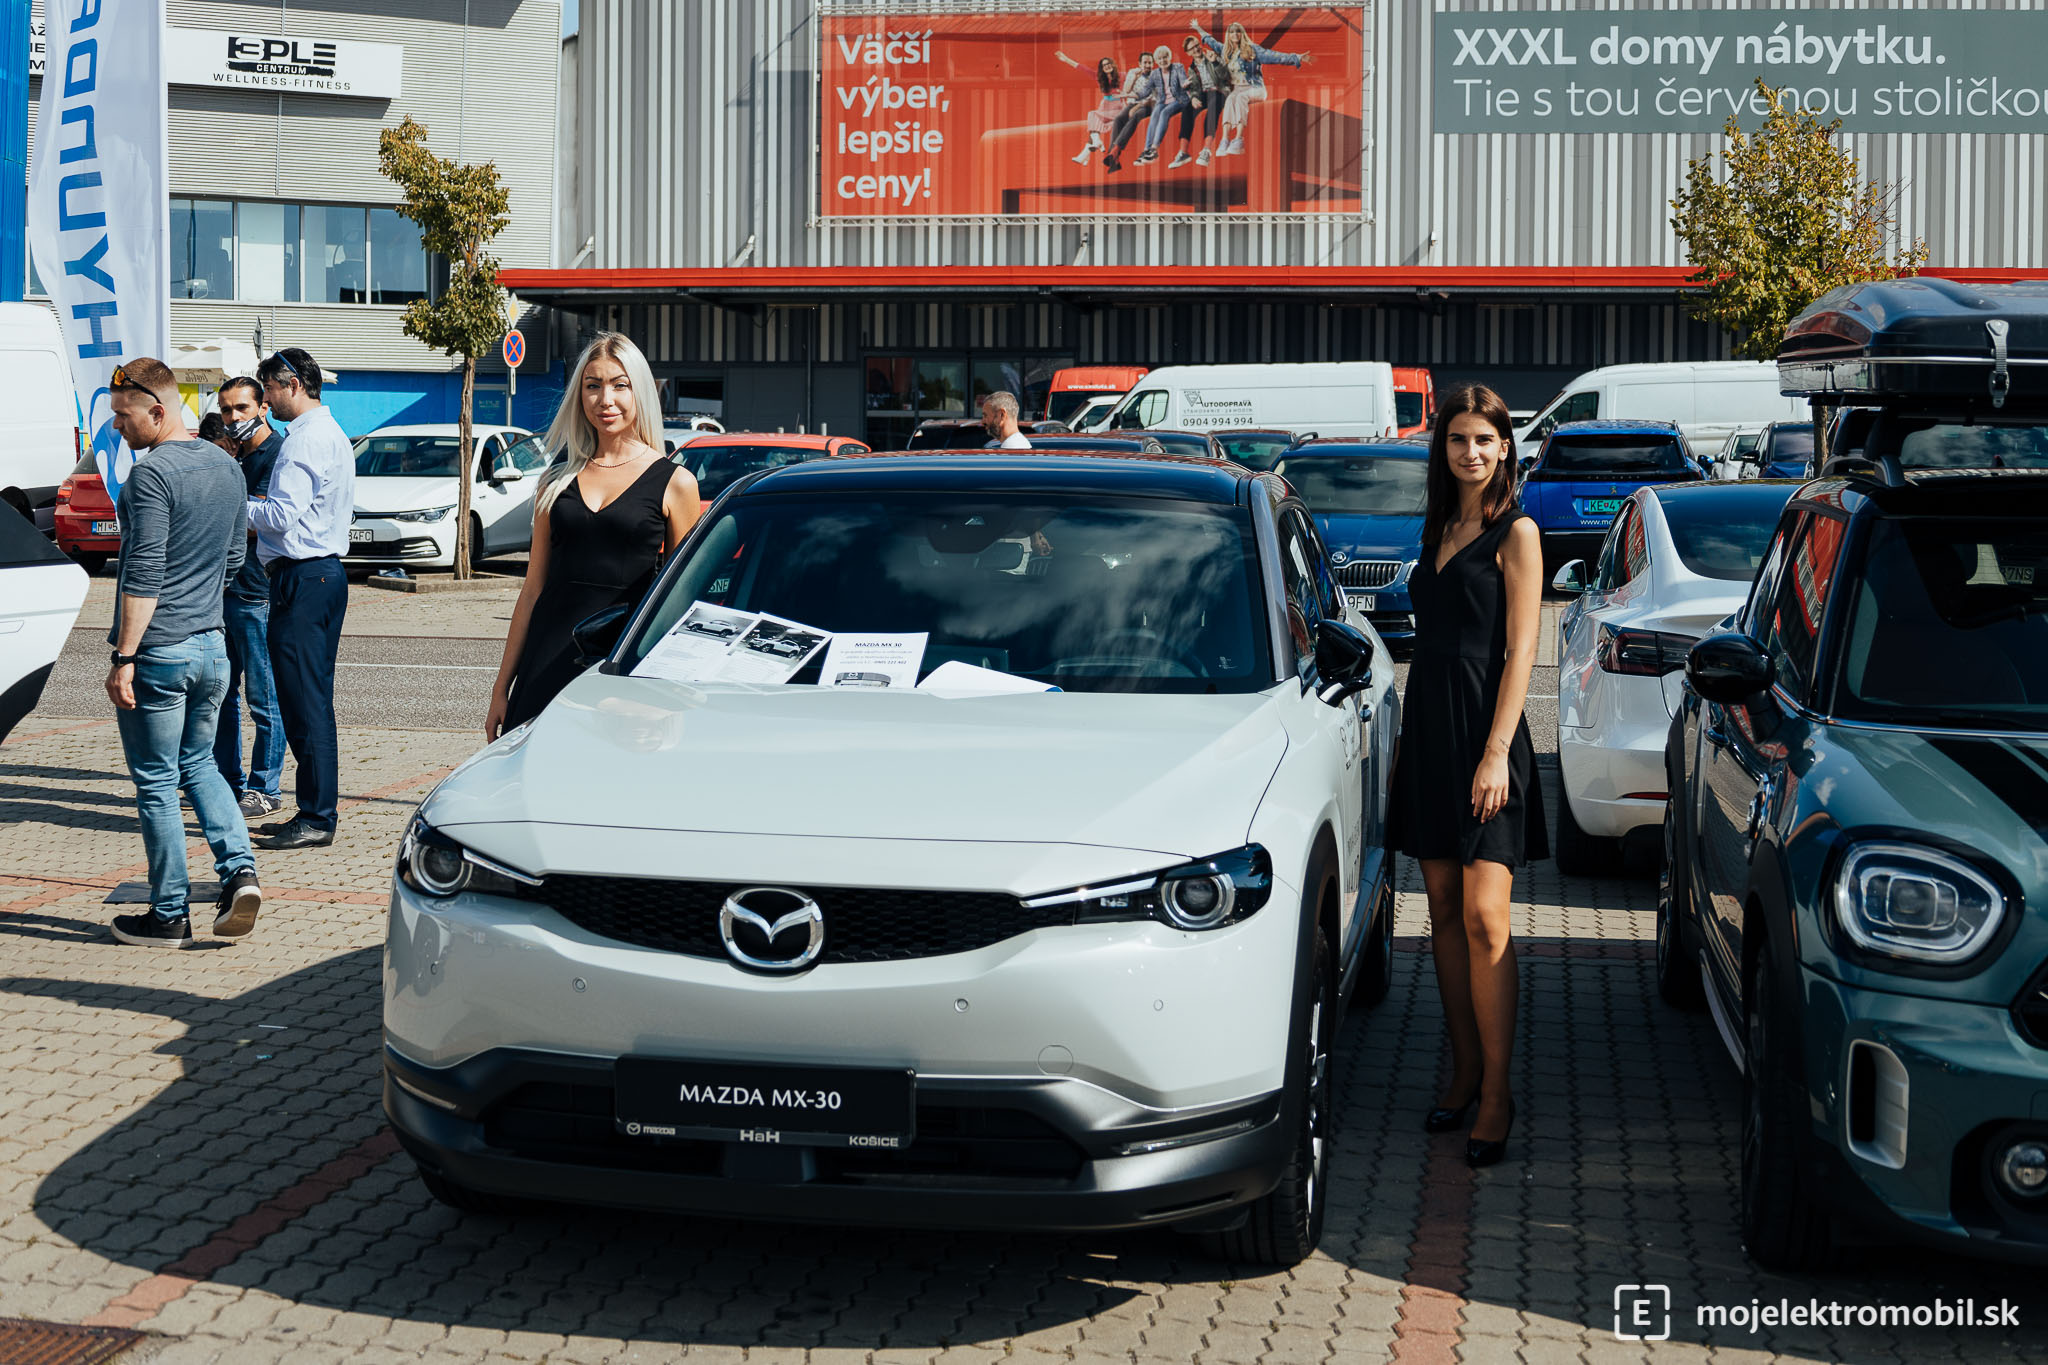 Mazda Salon elektromobilov 2021 Kosice